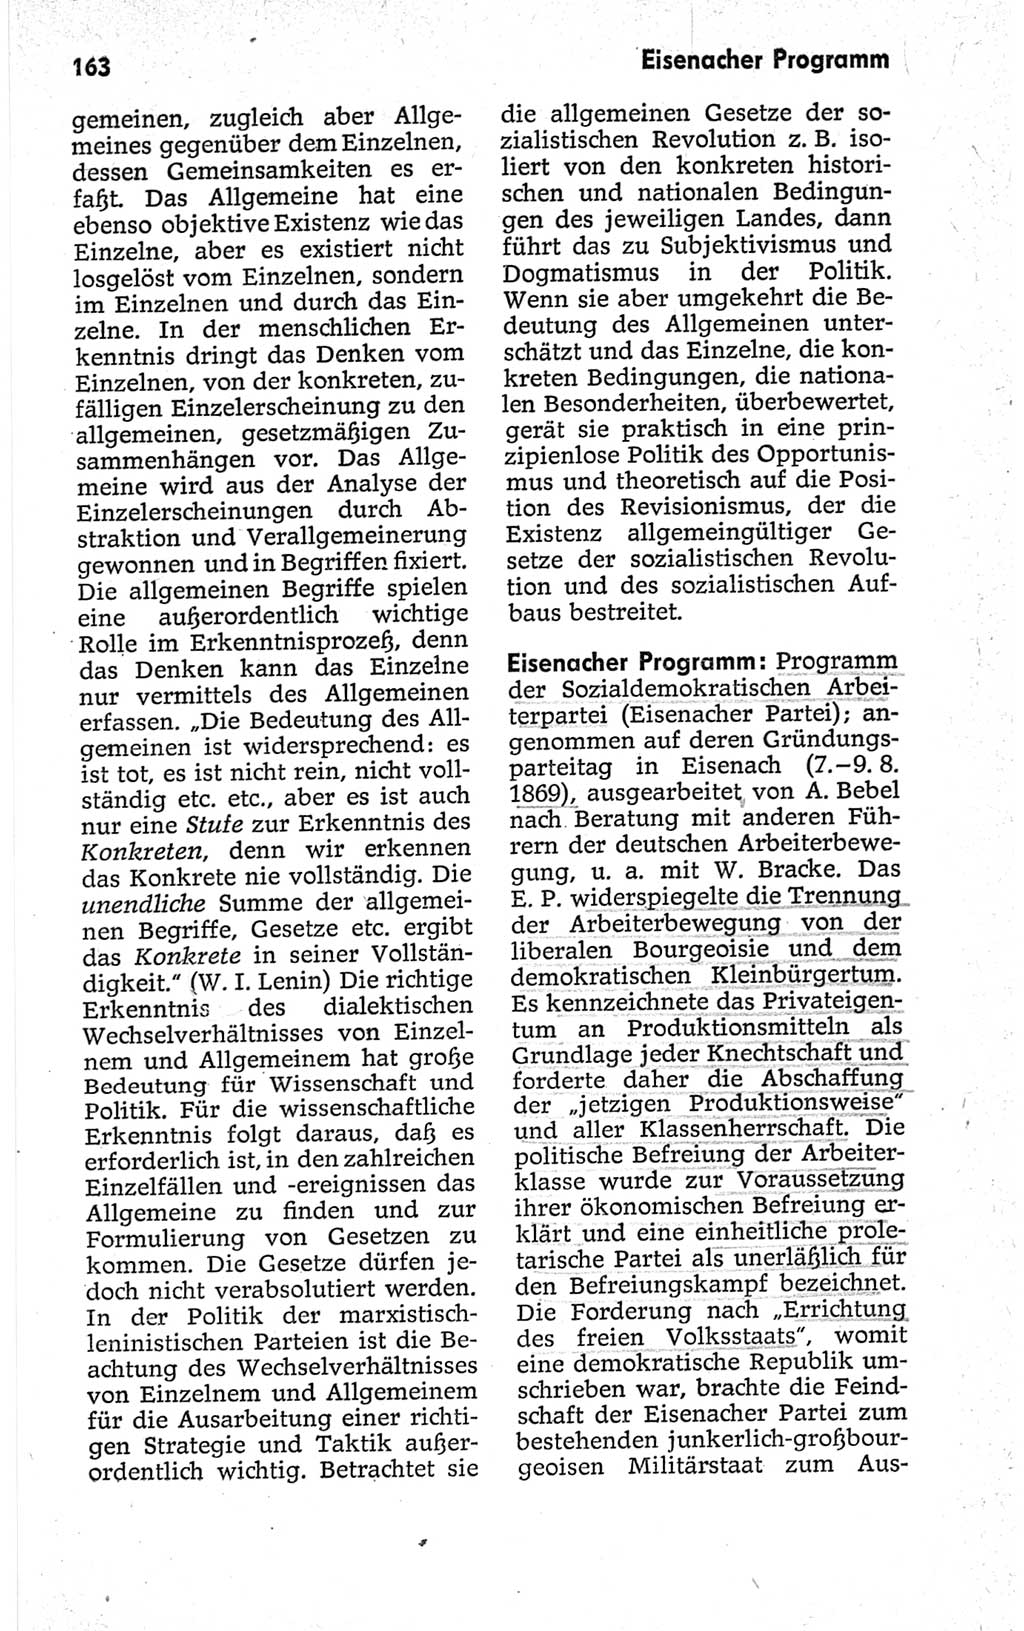 Kleines politisches Wörterbuch [Deutsche Demokratische Republik (DDR)] 1967, Seite 163 (Kl. pol. Wb. DDR 1967, S. 163)